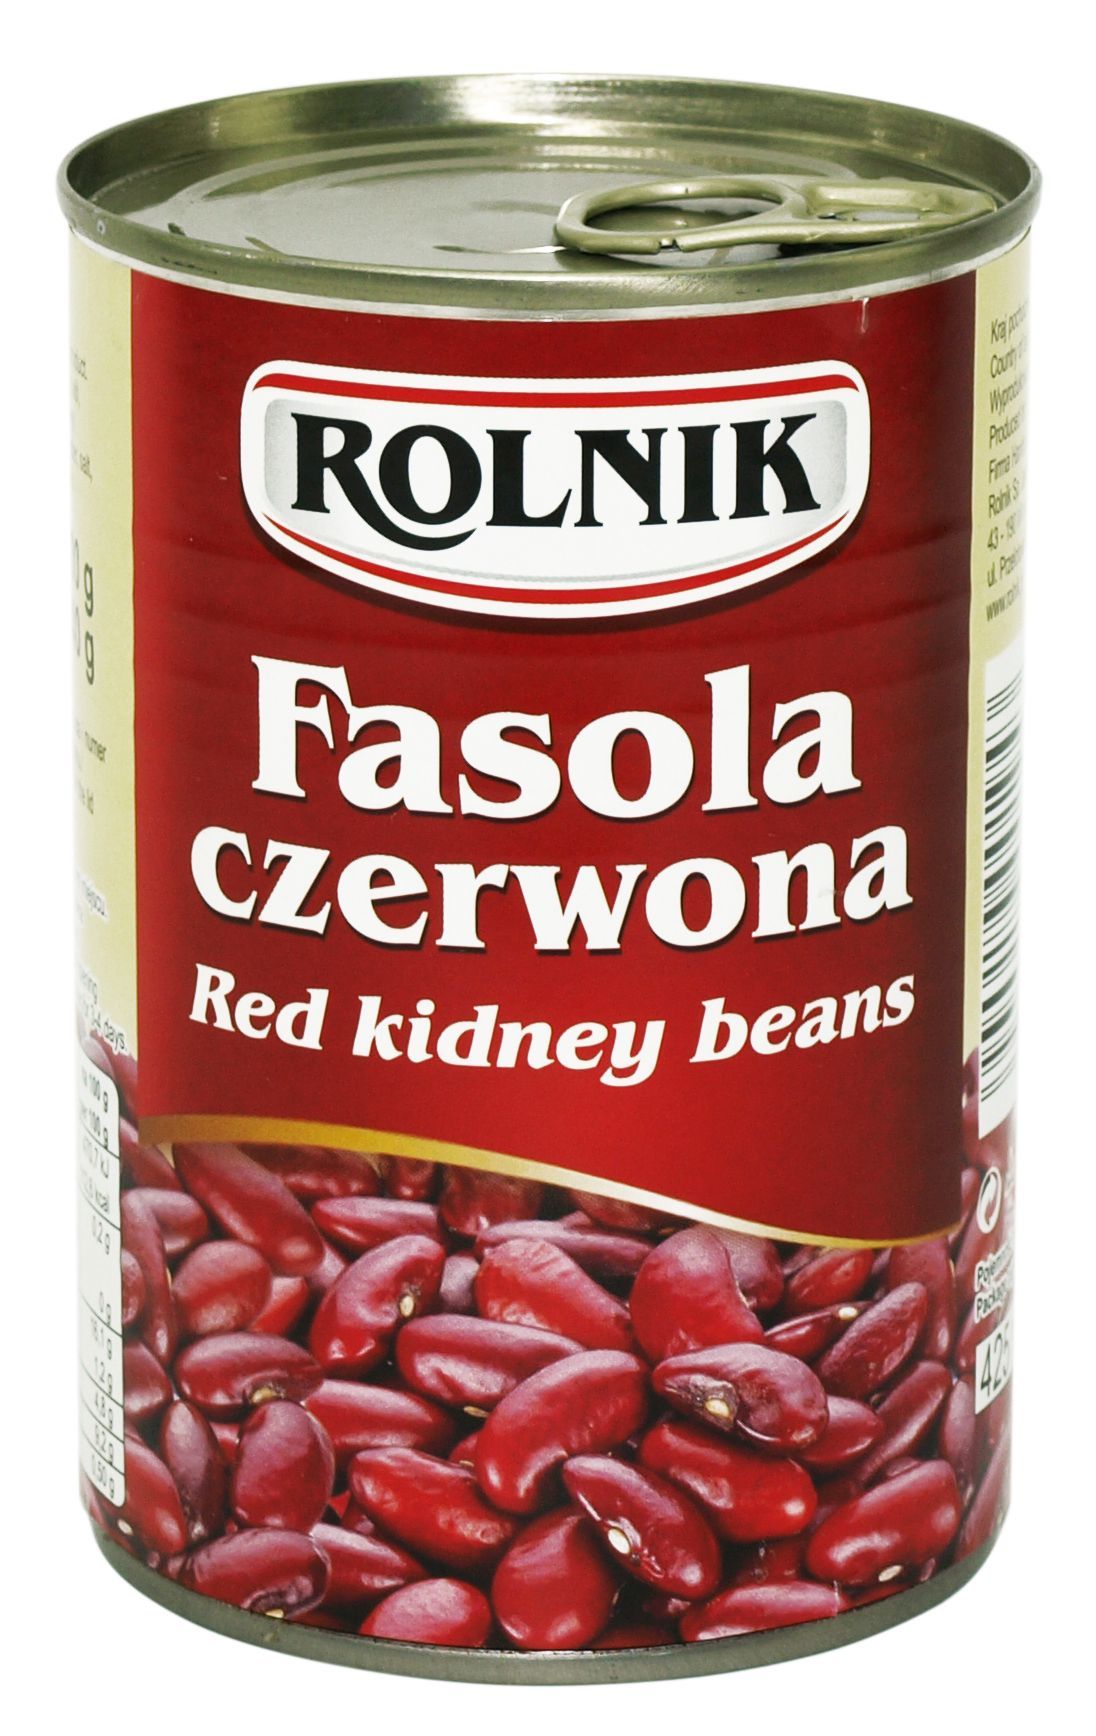 ROLNIK FASOLA CZERWONA 400g/240g (12)